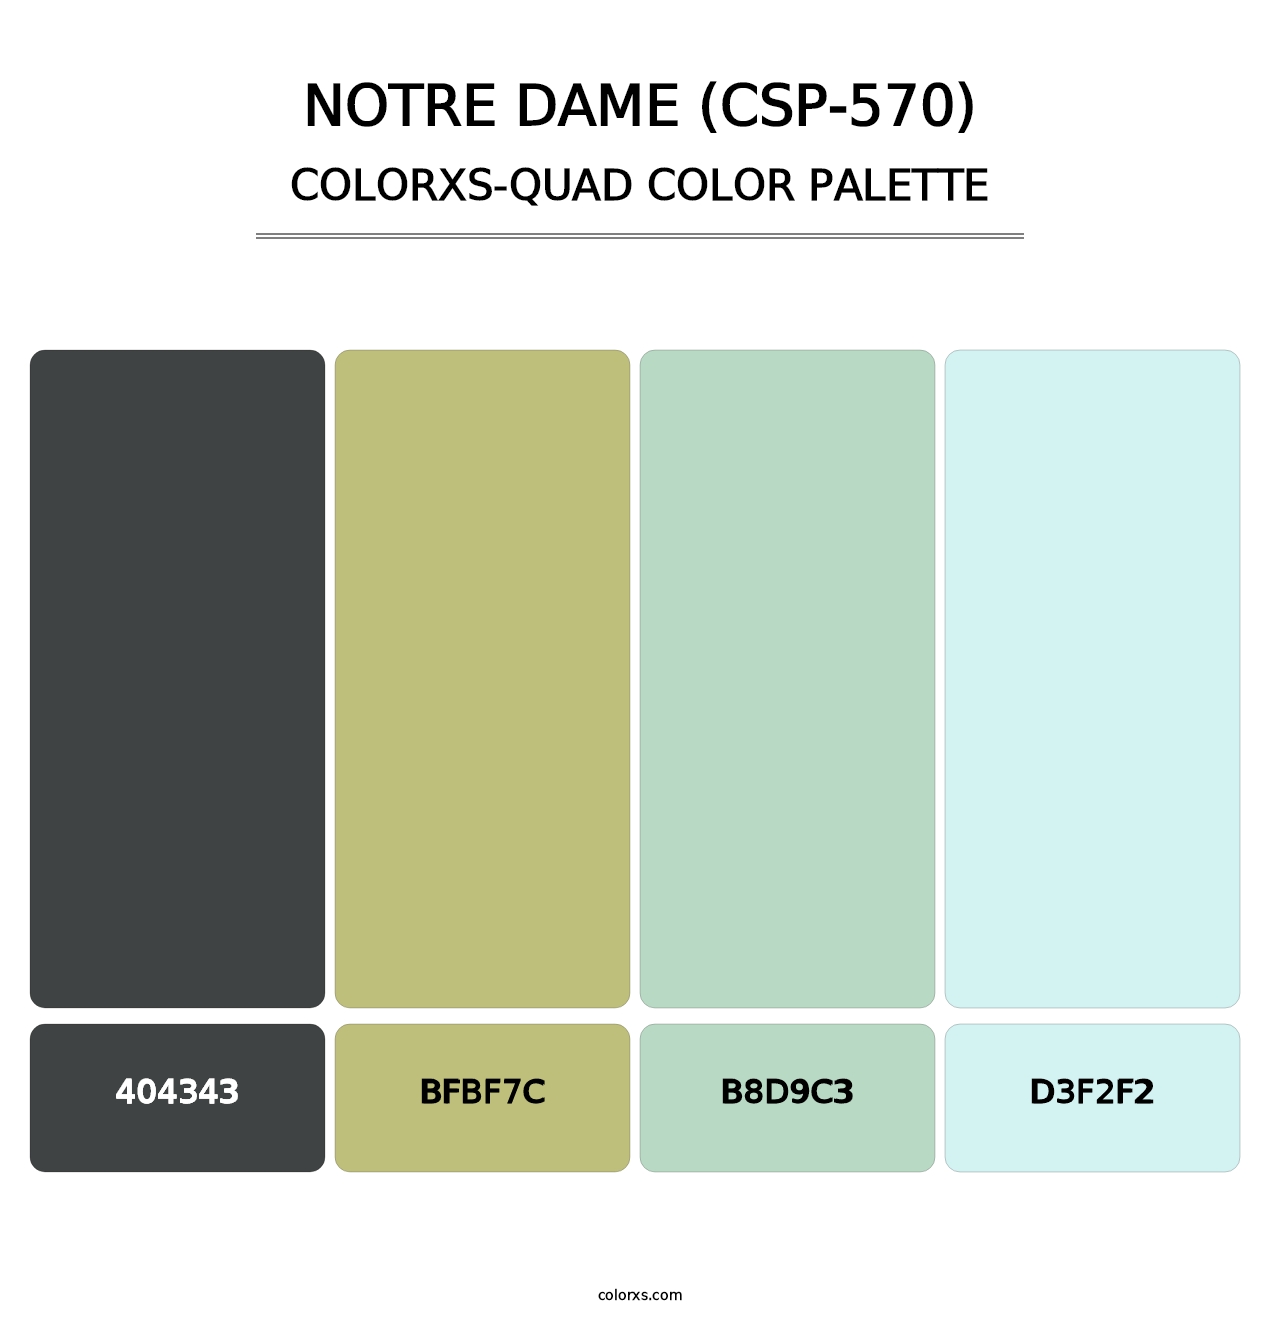 Notre Dame (CSP-570) - Colorxs Quad Palette